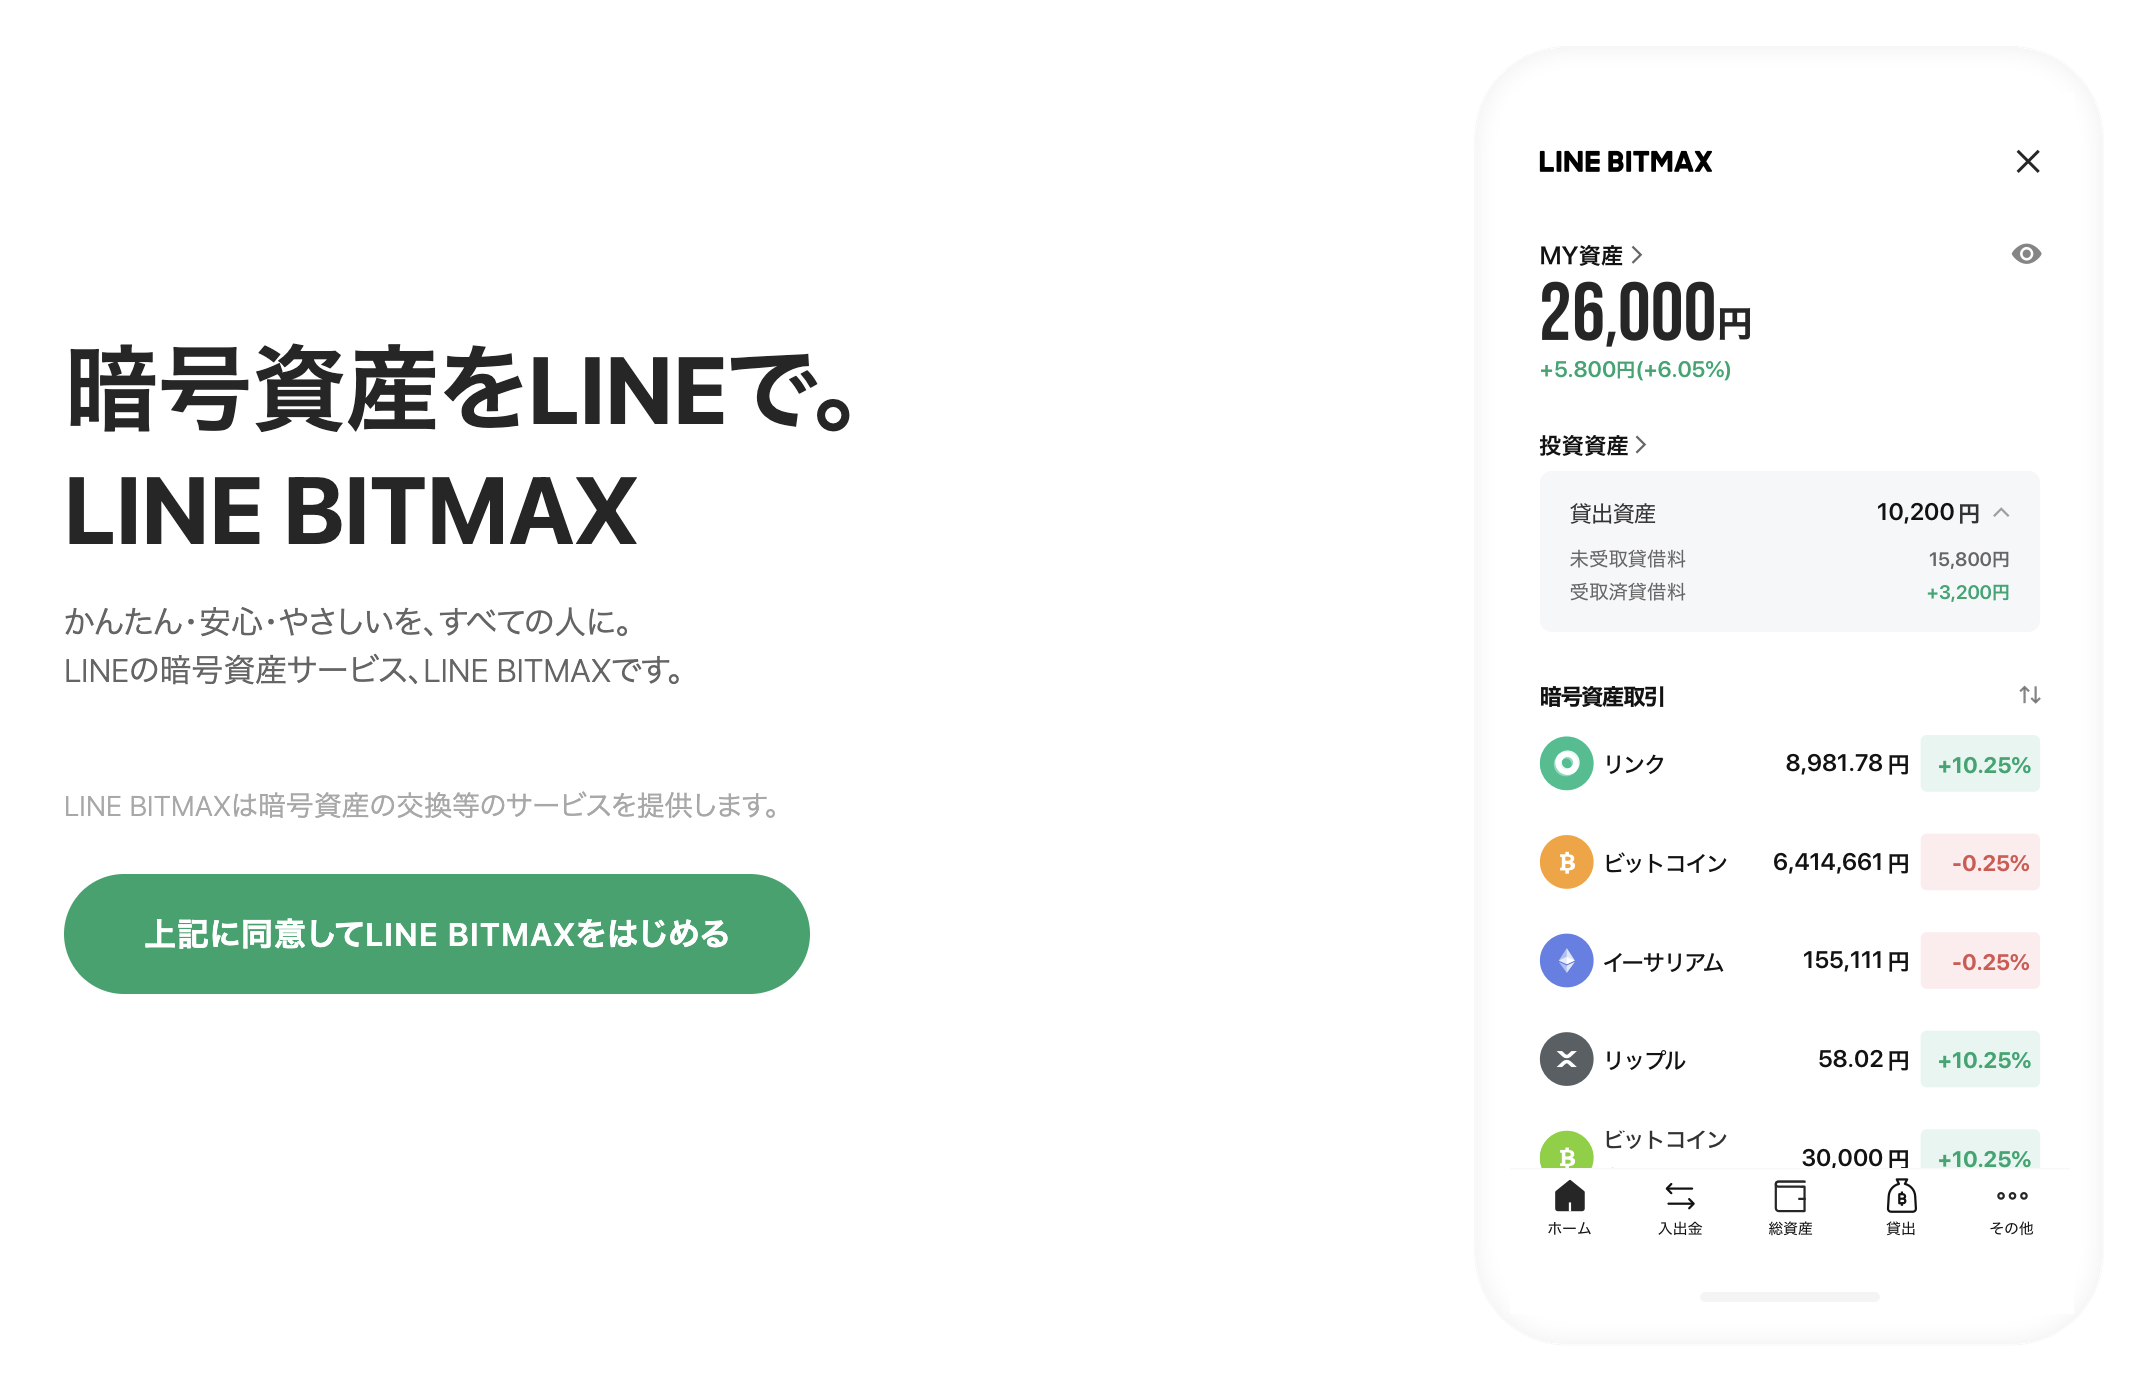 1ビットコイン_いくら_LINE BITMAX